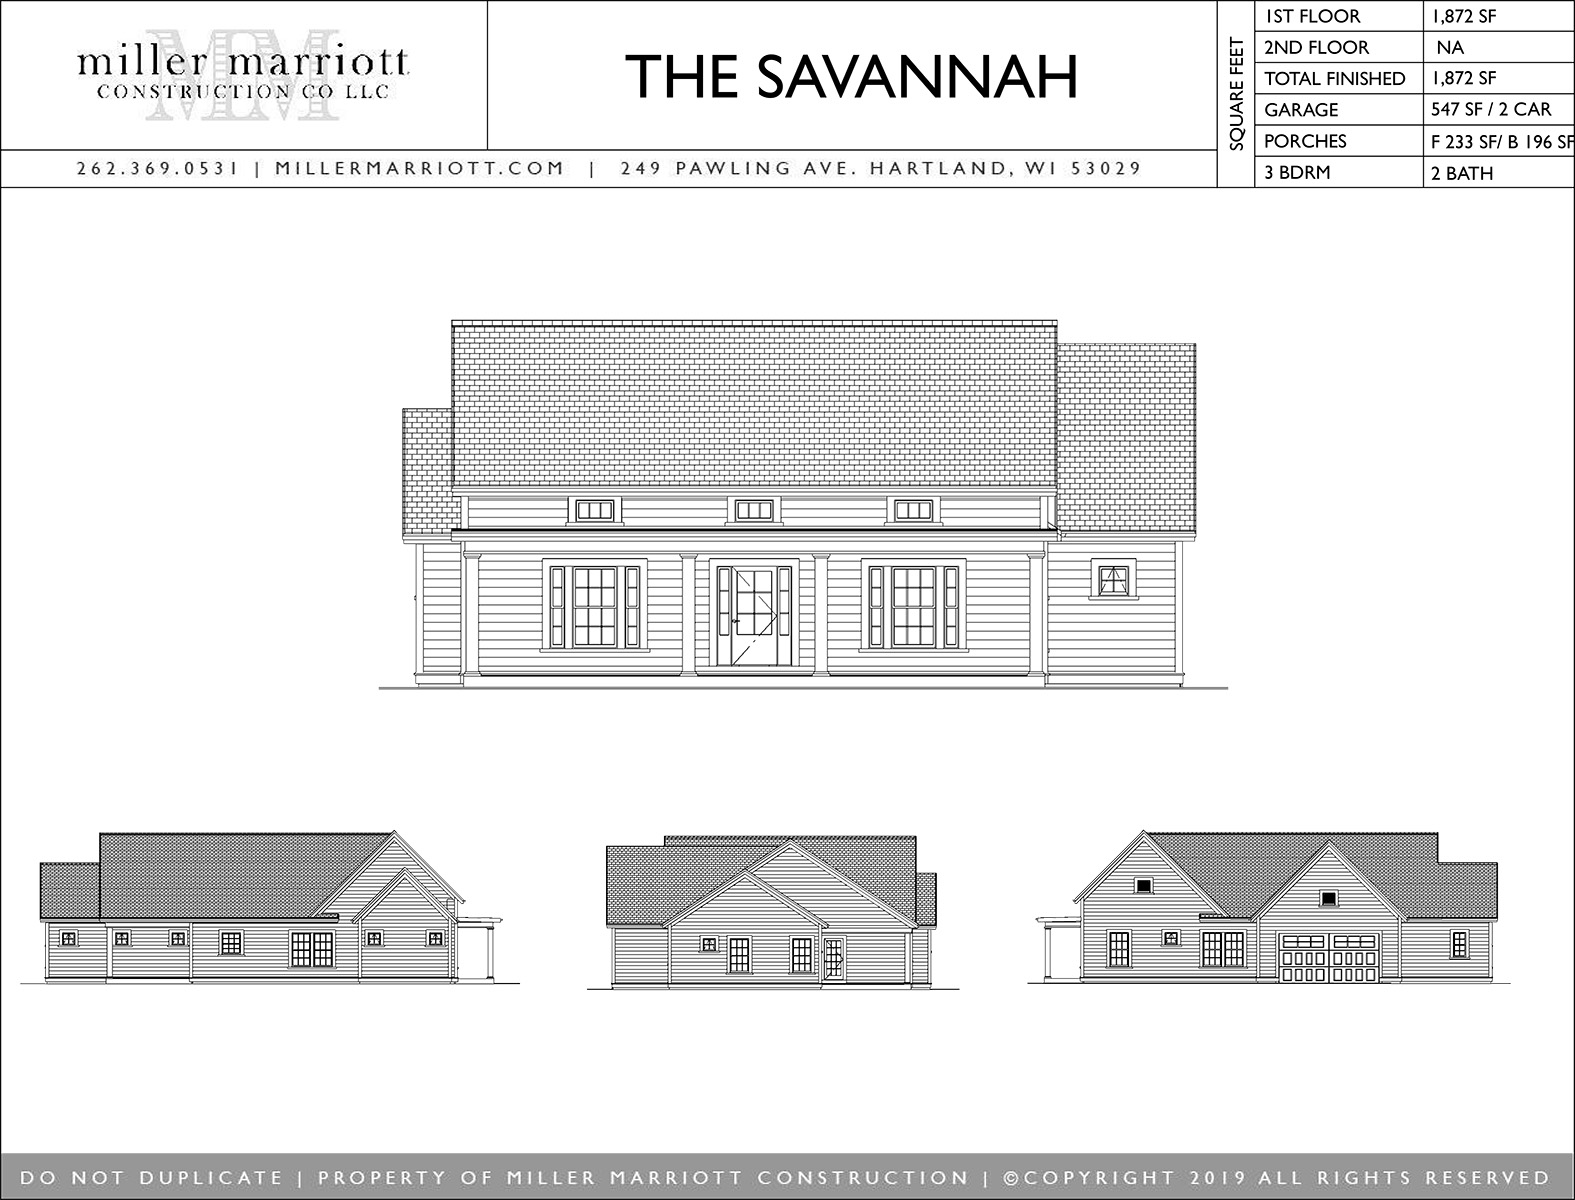 The Savannah Home plan